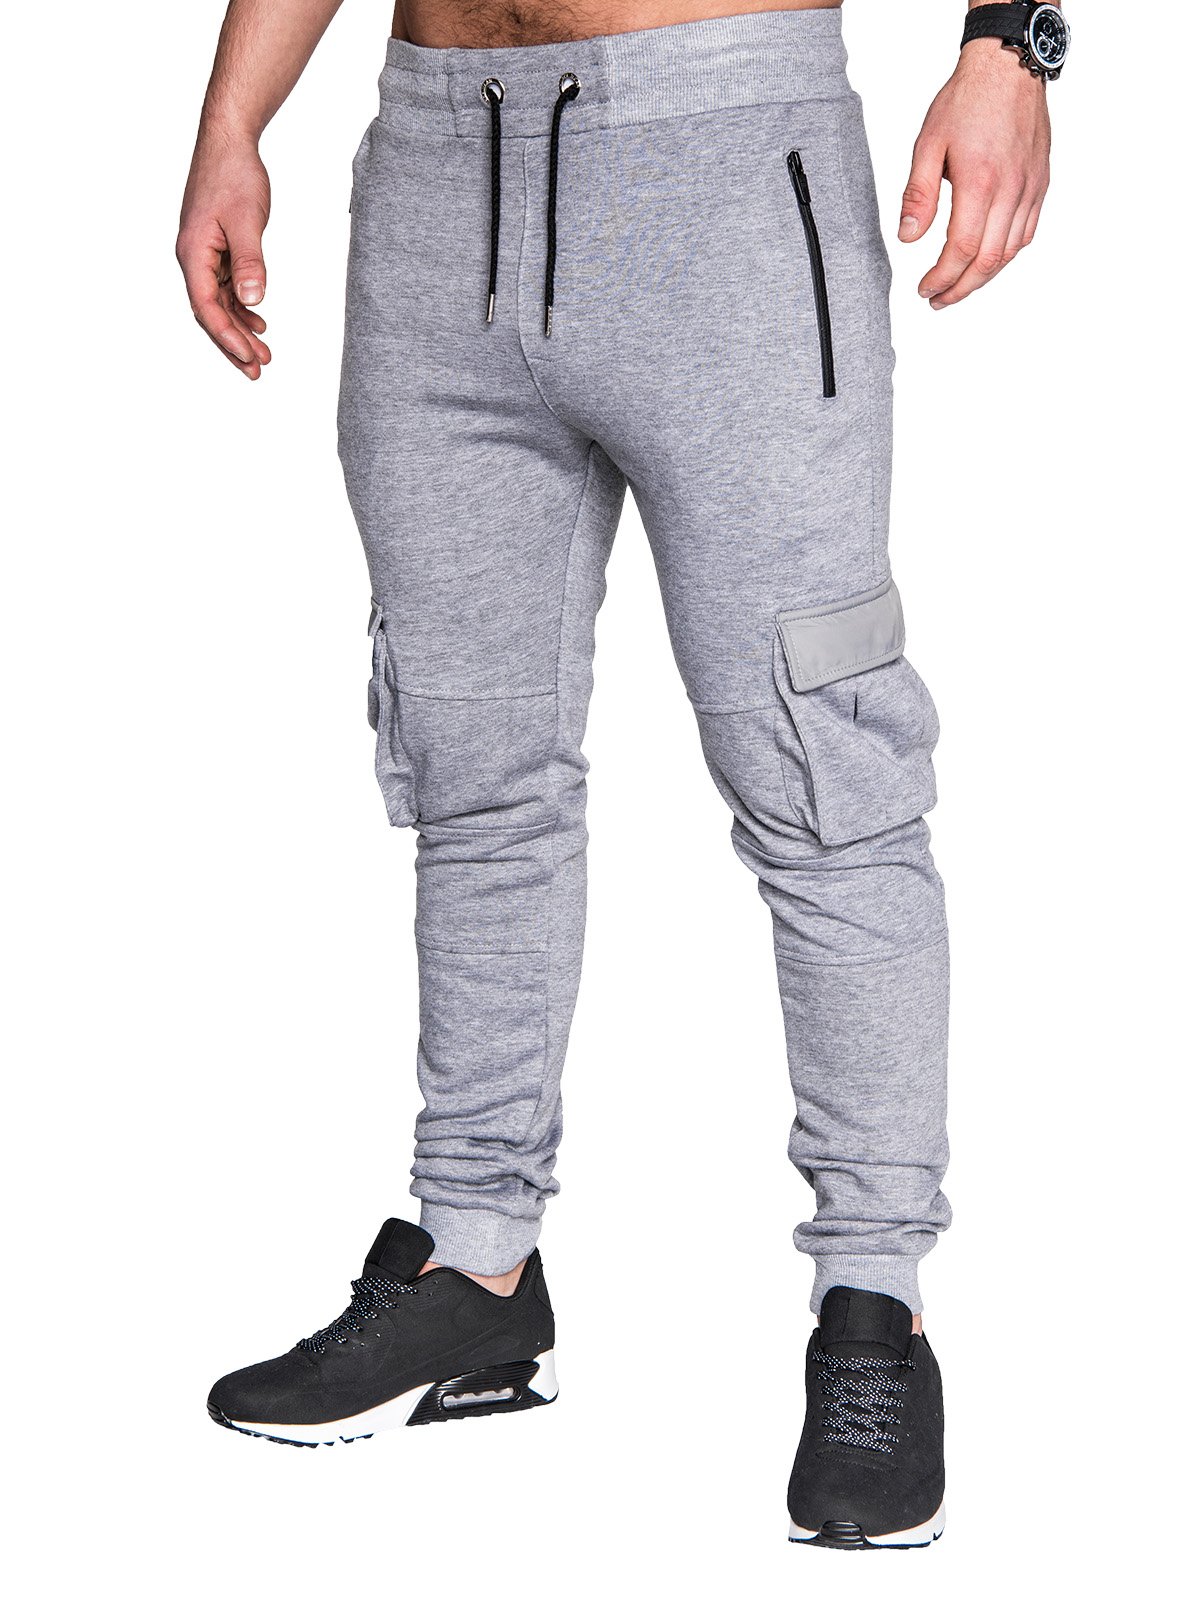 Men's sweatpants P429 - grey | MODONE wholesale - Clothing For Men